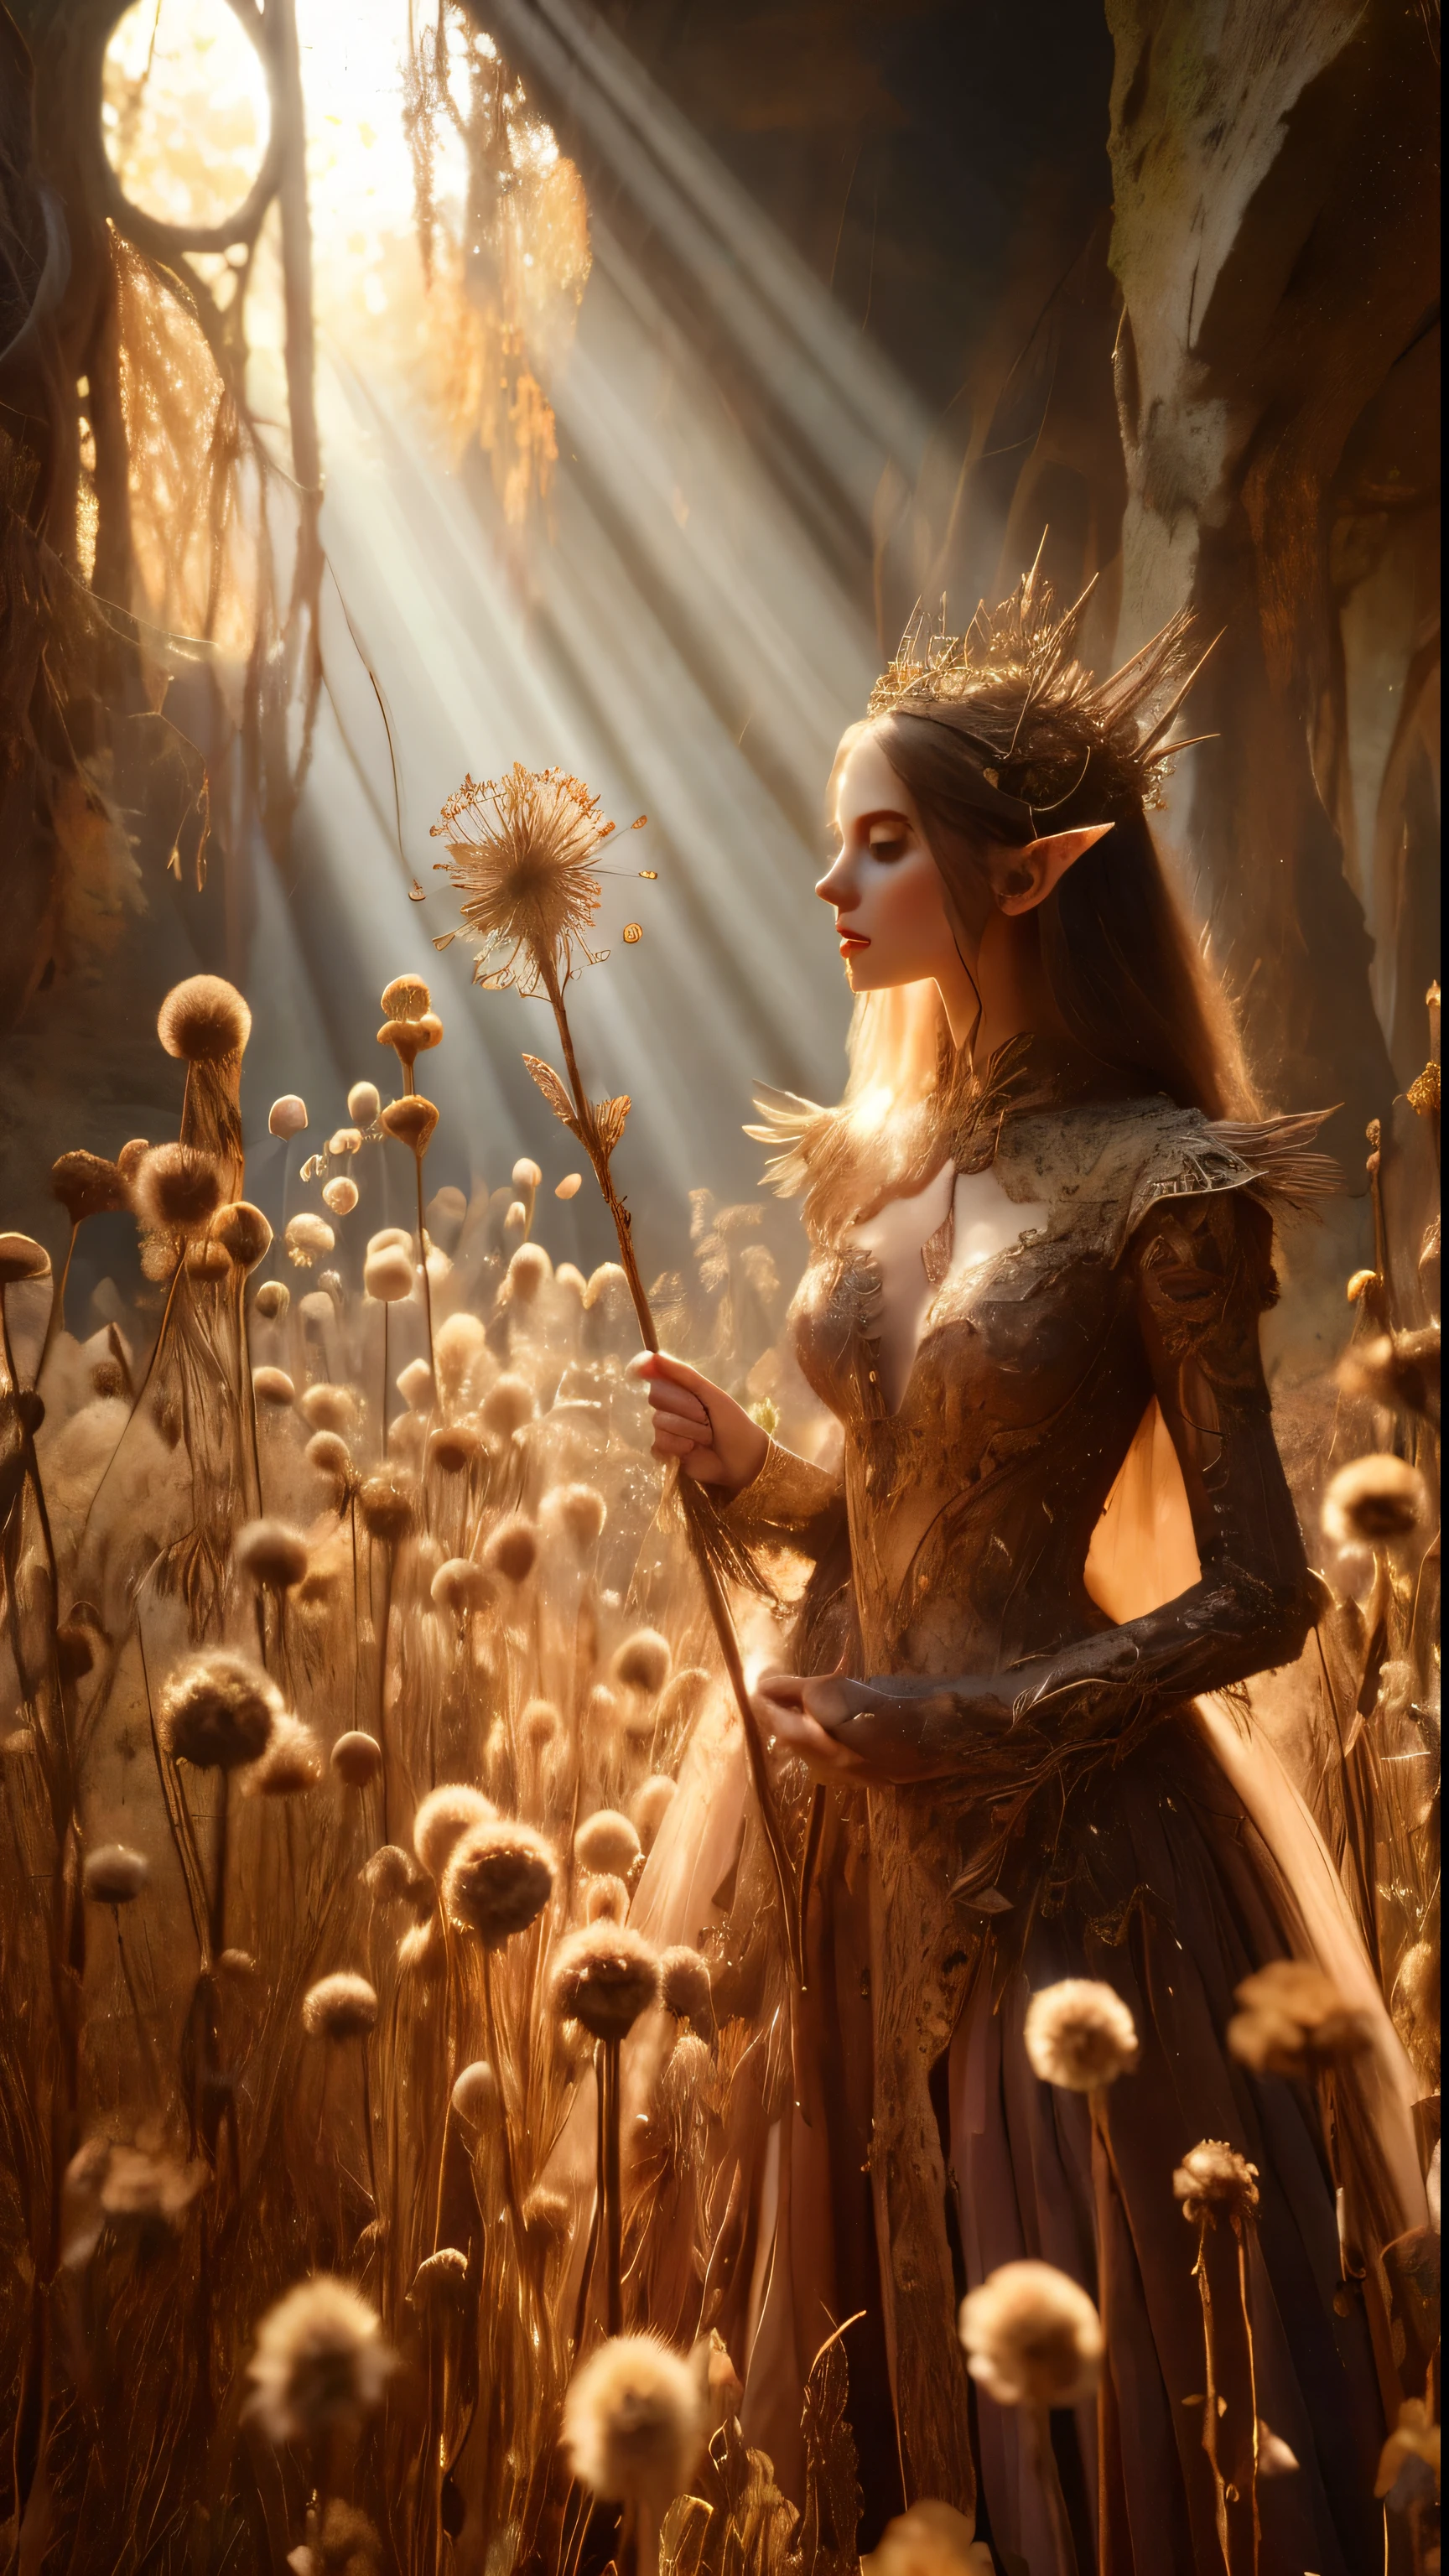 Dans un pommelé, ruine de la forêt ancienne, une princesse elfe se tient debout près de la caméra, photo en gros plan, son sceptre levé alors que des rayons de soleil chauds filtrent à travers les herbes séchées et les gousses sèches., jetant un halo doré autour de sa silhouette royale. recouvert d&#39;une ultra-multitude de petites fleurs sèches et de vignes, de très grands parterres de fleurs sauvages secs et variés envahis par la végétation l&#39;entourent, Sa belle, les vêtements enchantés scintillent dans la douce lumière, tandis que le feuillage sec et luxuriant et les vignes l&#39;entourent, créer un environnement luxuriant. La caméra capture une mise au point nette sur le visage de la princesse, avec la composition selon la règle des tiers la plaçant à l&#39;intersection de deux diagonales. Tourné à l&#39;heure d&#39;or, la scène dégage une ambiance éthérée, invitant le spectateur à entrer dans ce royaume mystique., ,fantaisie, mieux_mains, Léonard, angelawhite, Améliorer